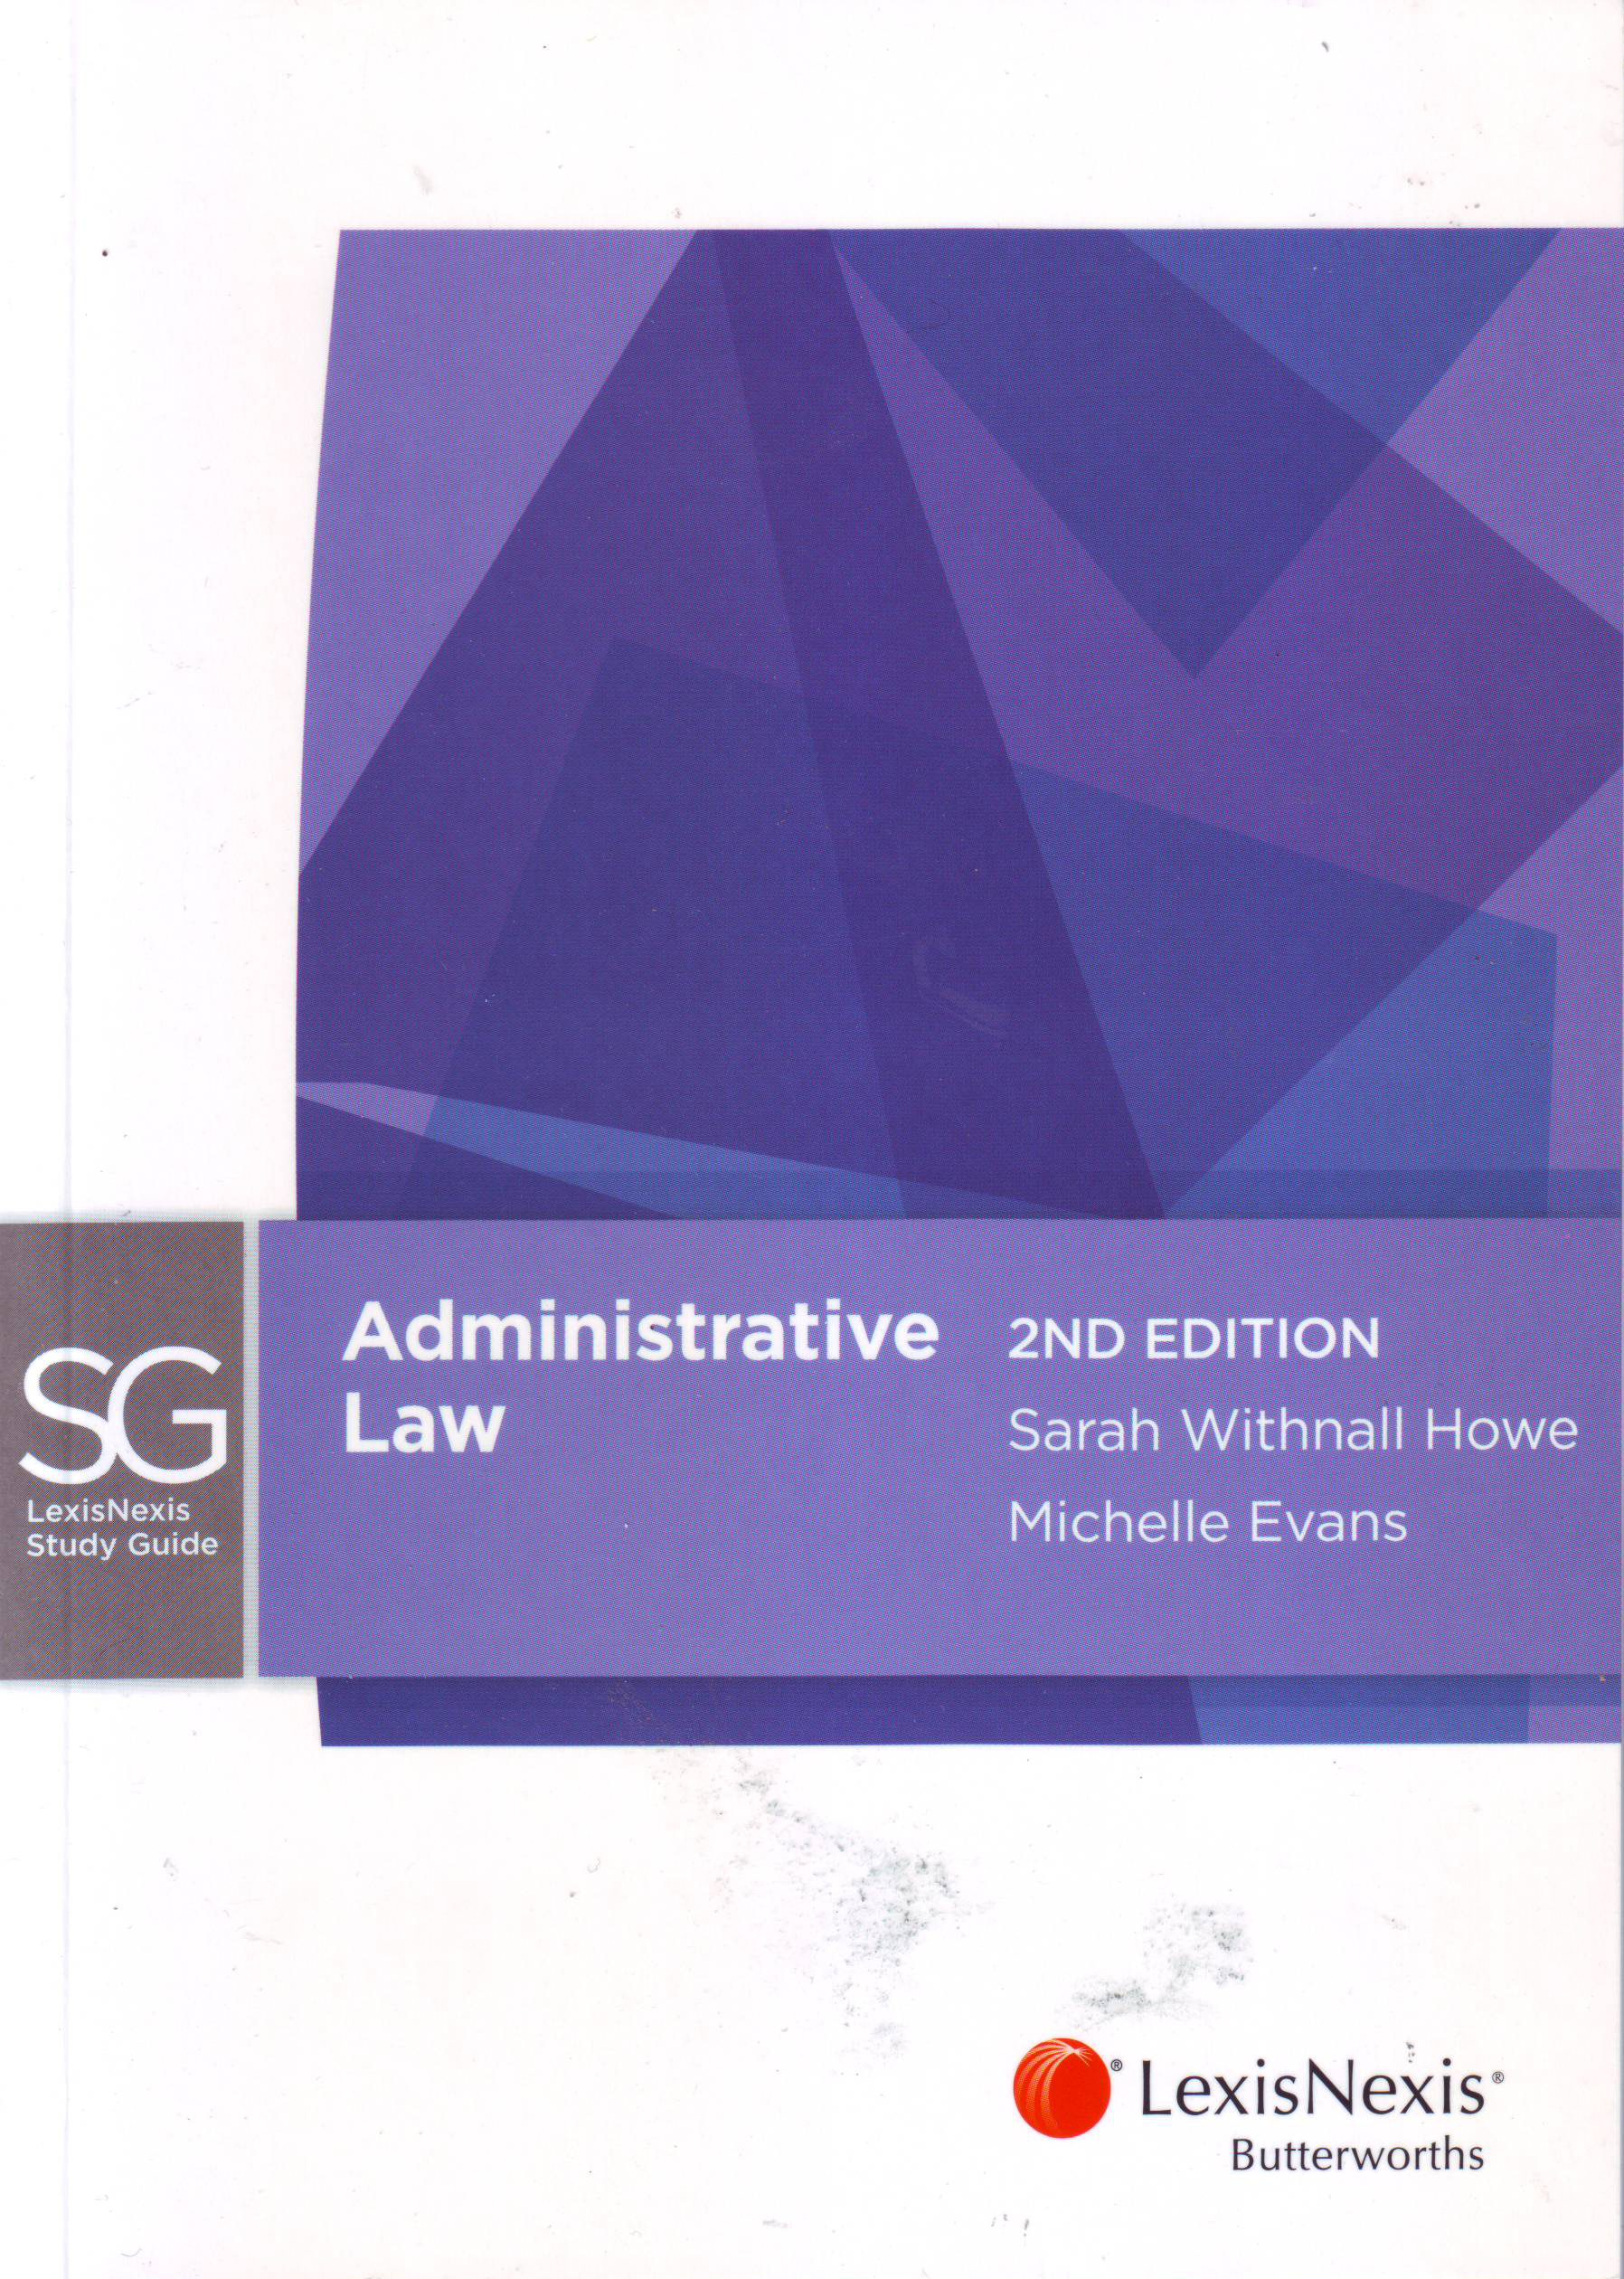 LexisNexis Study Guide: Administrative Law e2